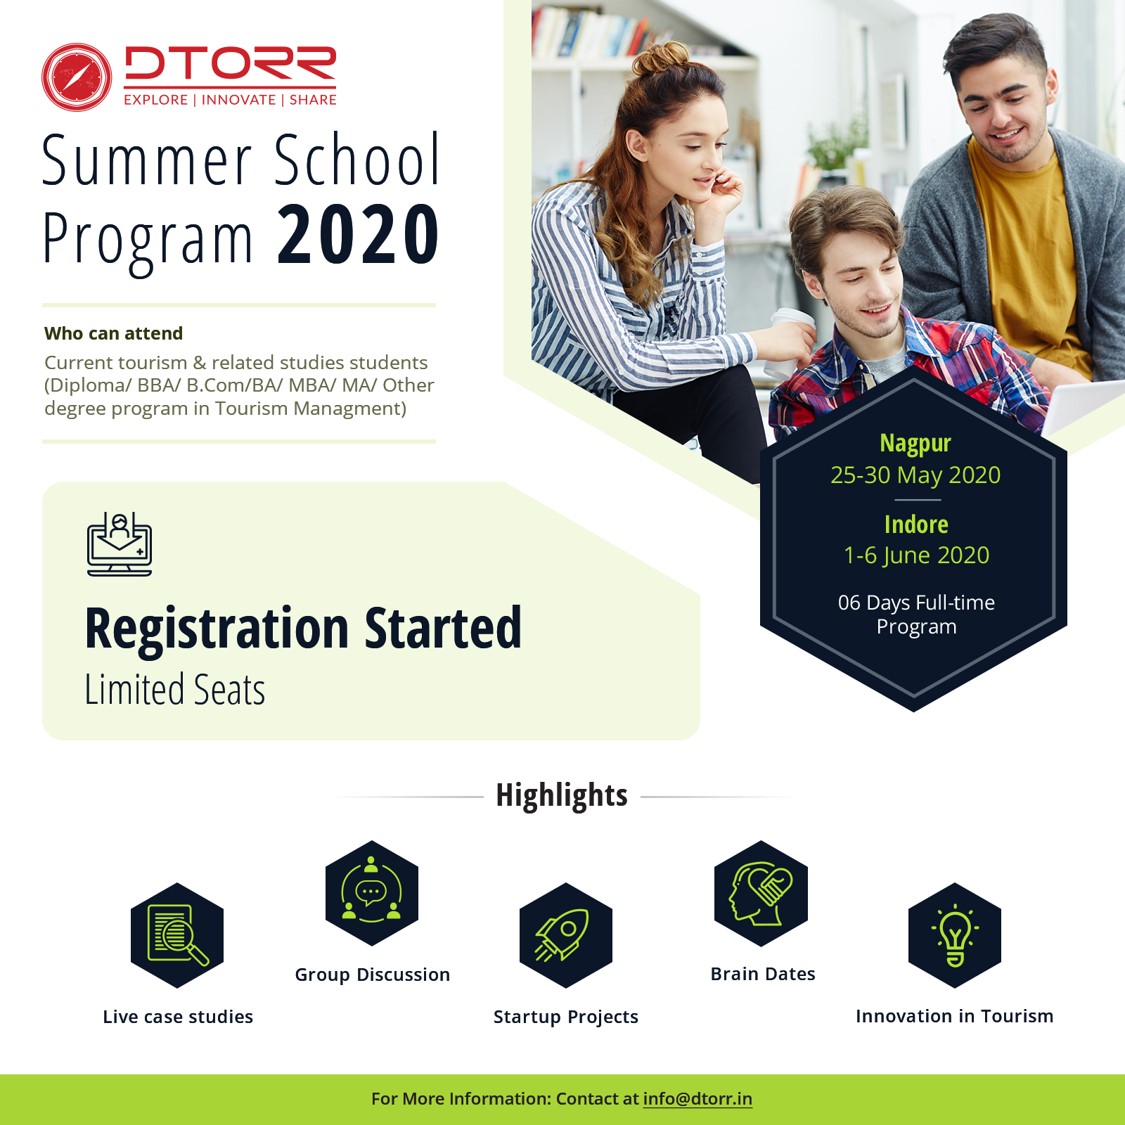 DTORR Summer School Program - 2020